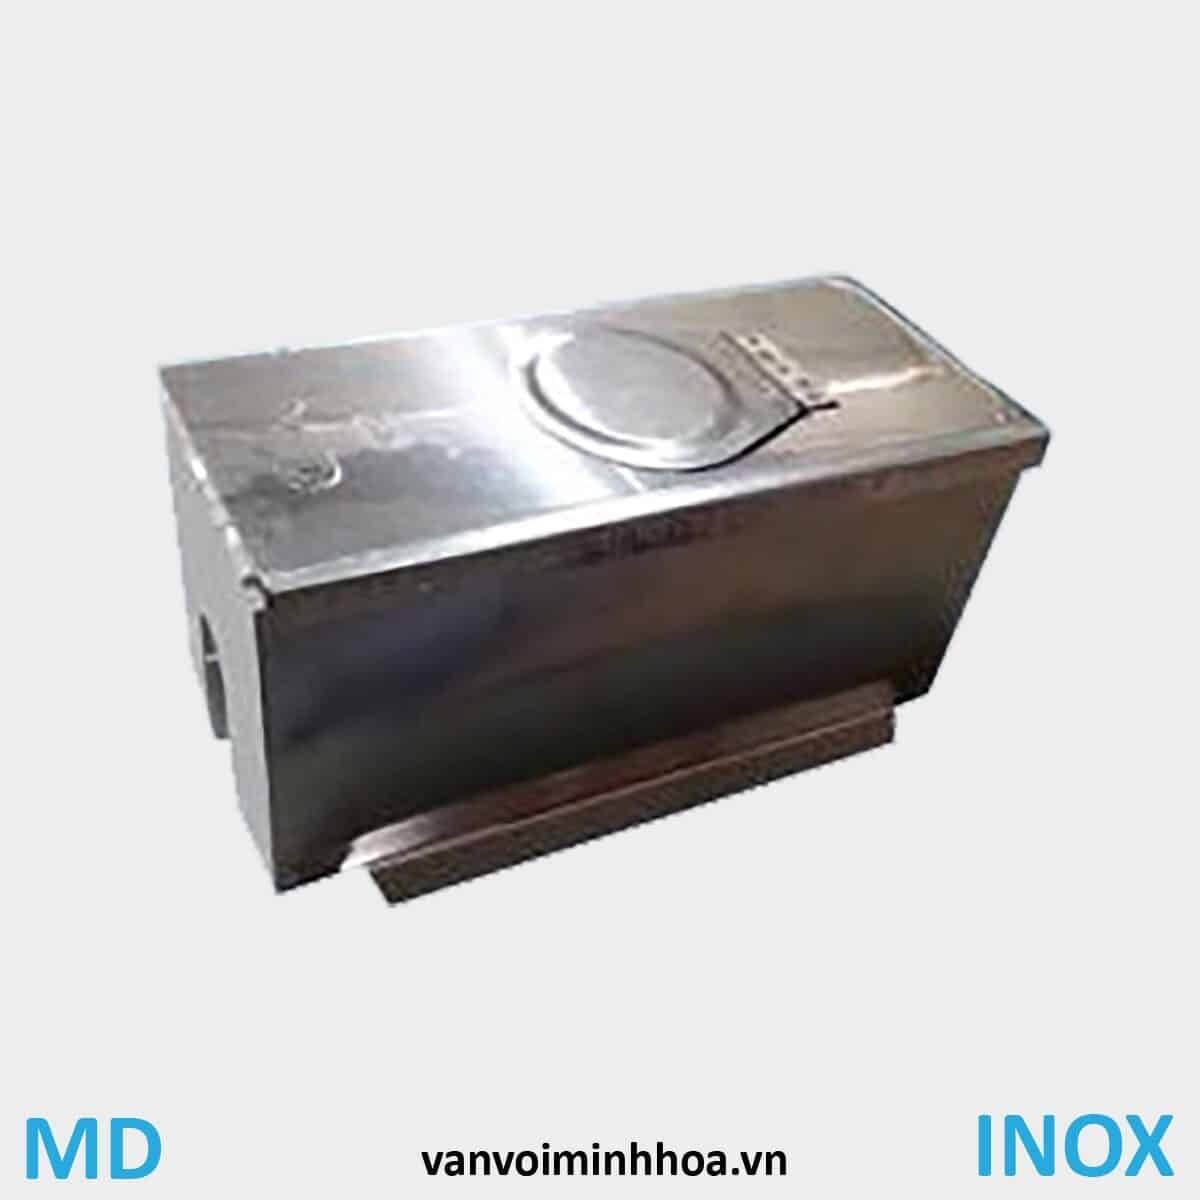 Hộp bảo vệ đồng hồ nước bằng Inox MD Series